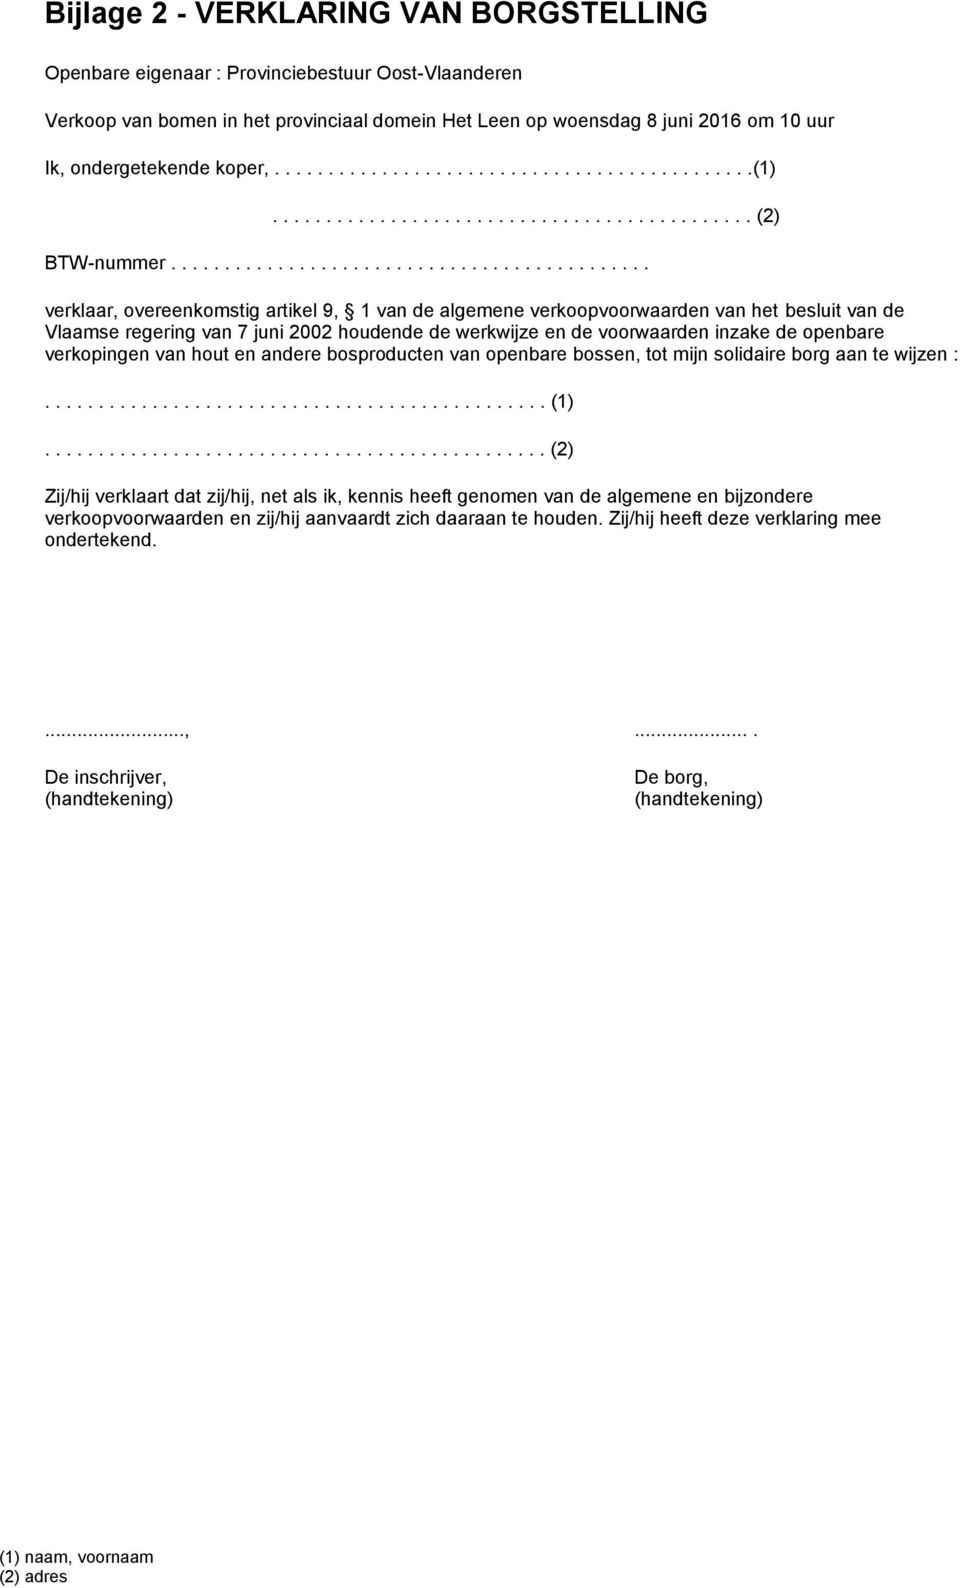 ............................................ verklaar, overeenkomstig artikel 9, 1 van de algemene verkoopvoorwaarden van het besluit van de Vlaamse regering van 7 juni 2002 houdende de werkwijze en